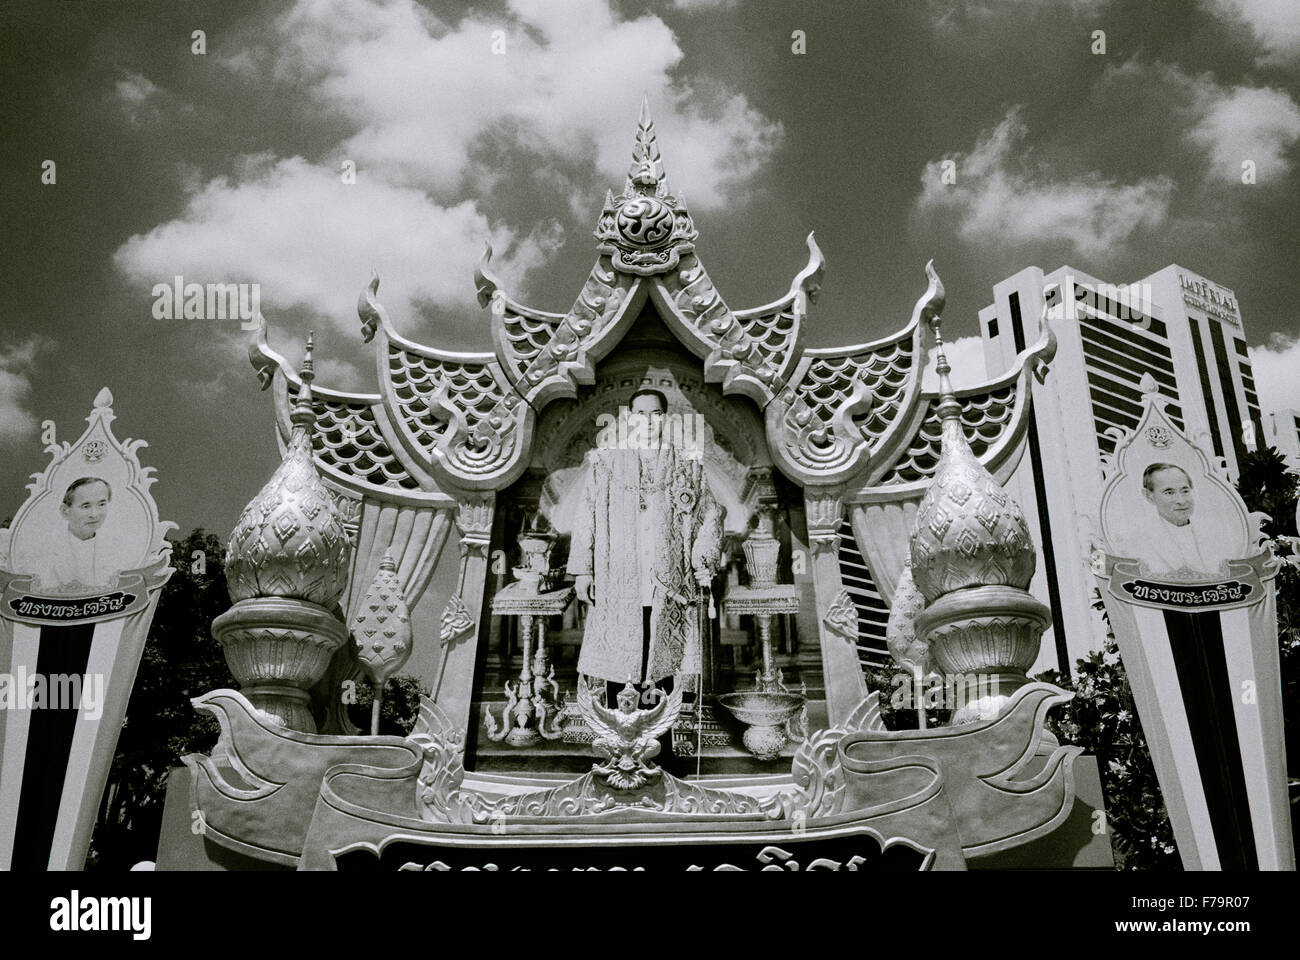 La culture de l'art traditionnel thaïlandais le roi Bhumibol Adulyadej dans Sukhumvit à Bangkok en Thaïlande en Extrême-Orient asie du sud-est. monarchie thaï image Banque D'Images